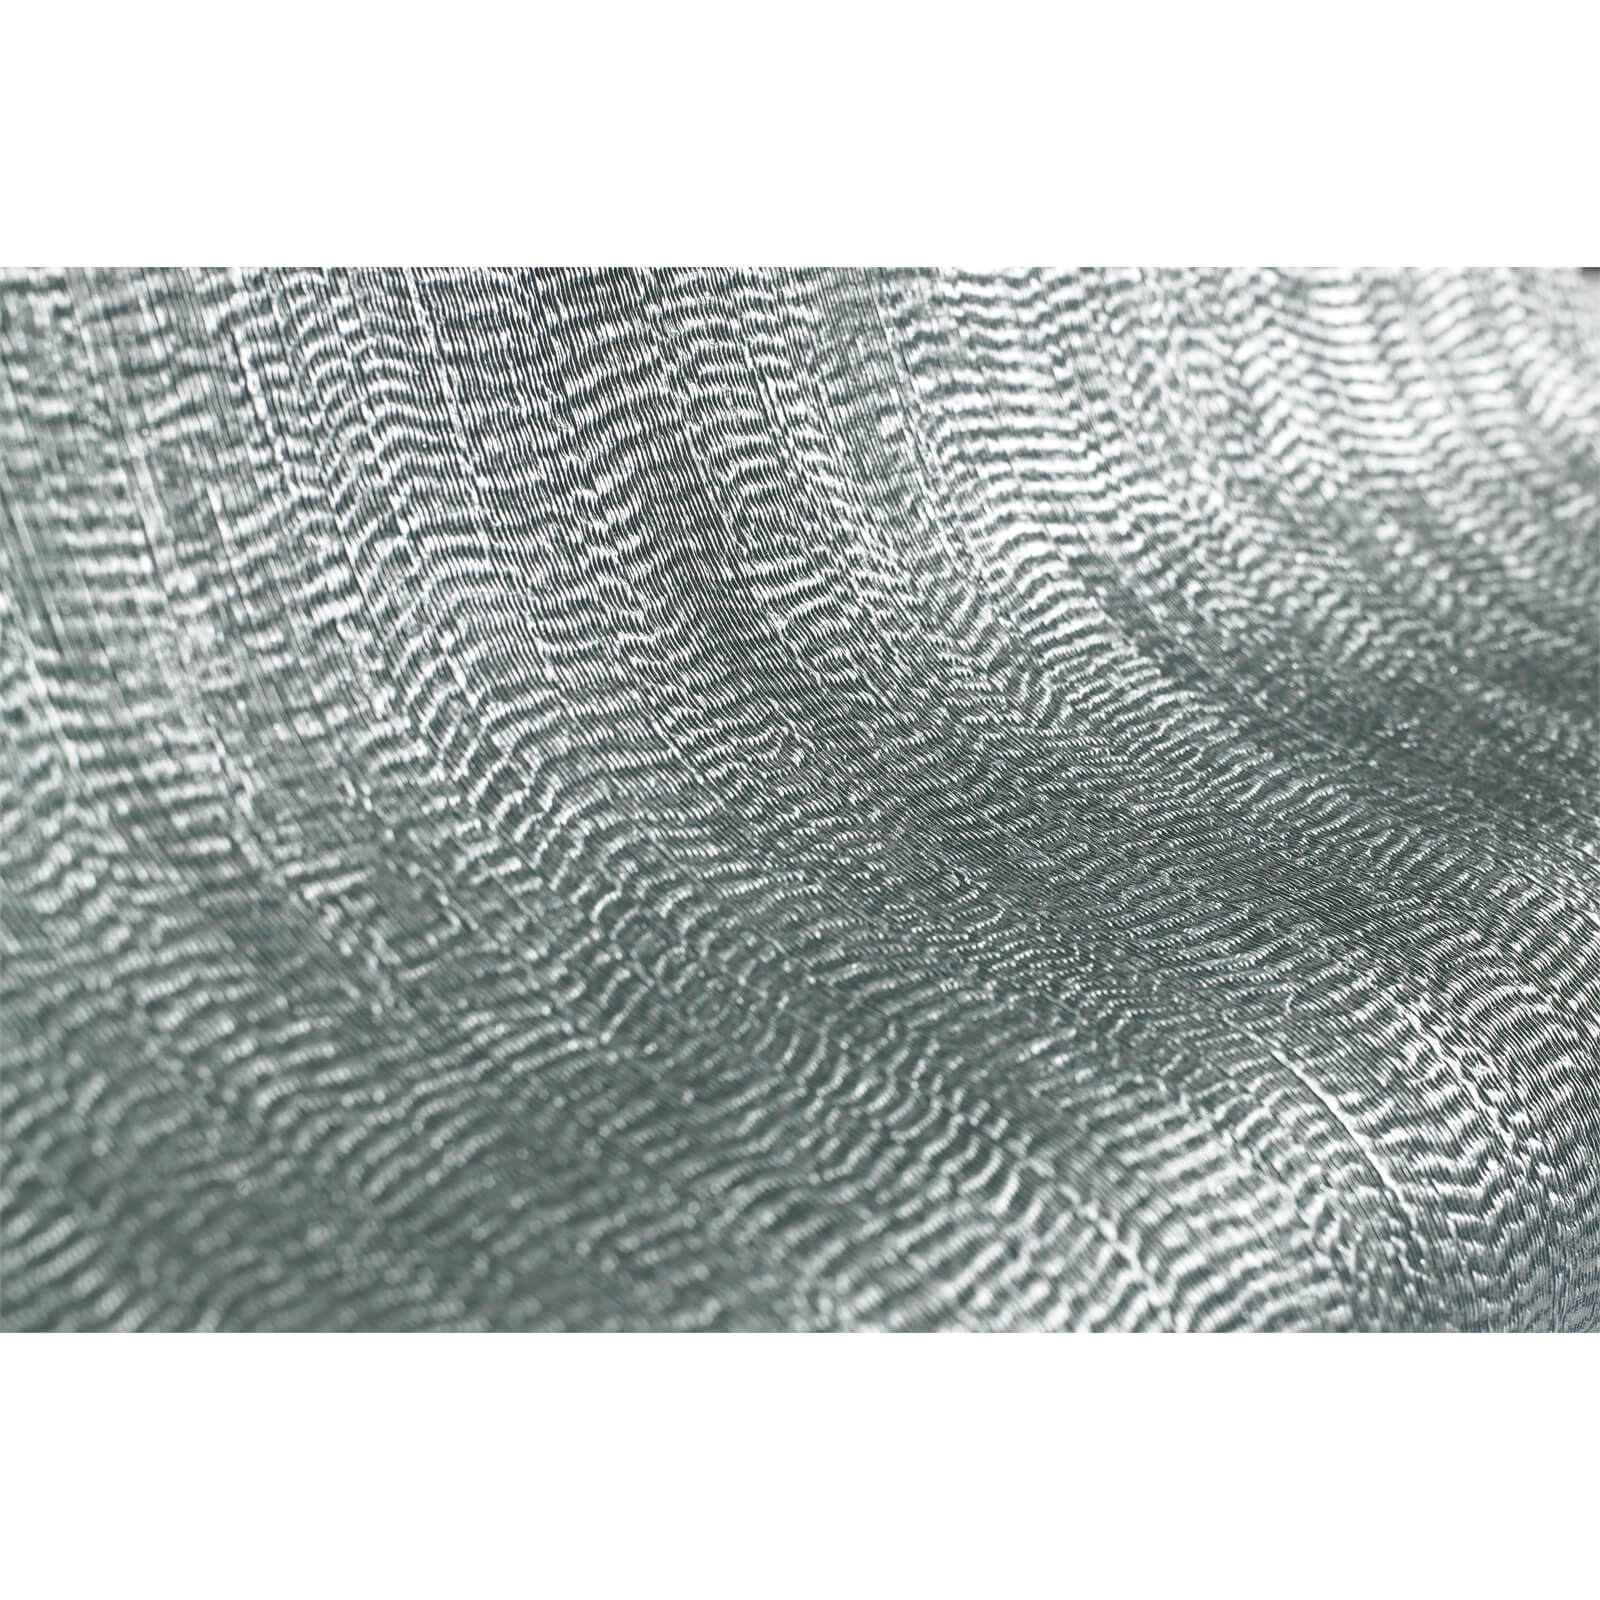 Boutique Water Silk Plain Wallpaper - Teal